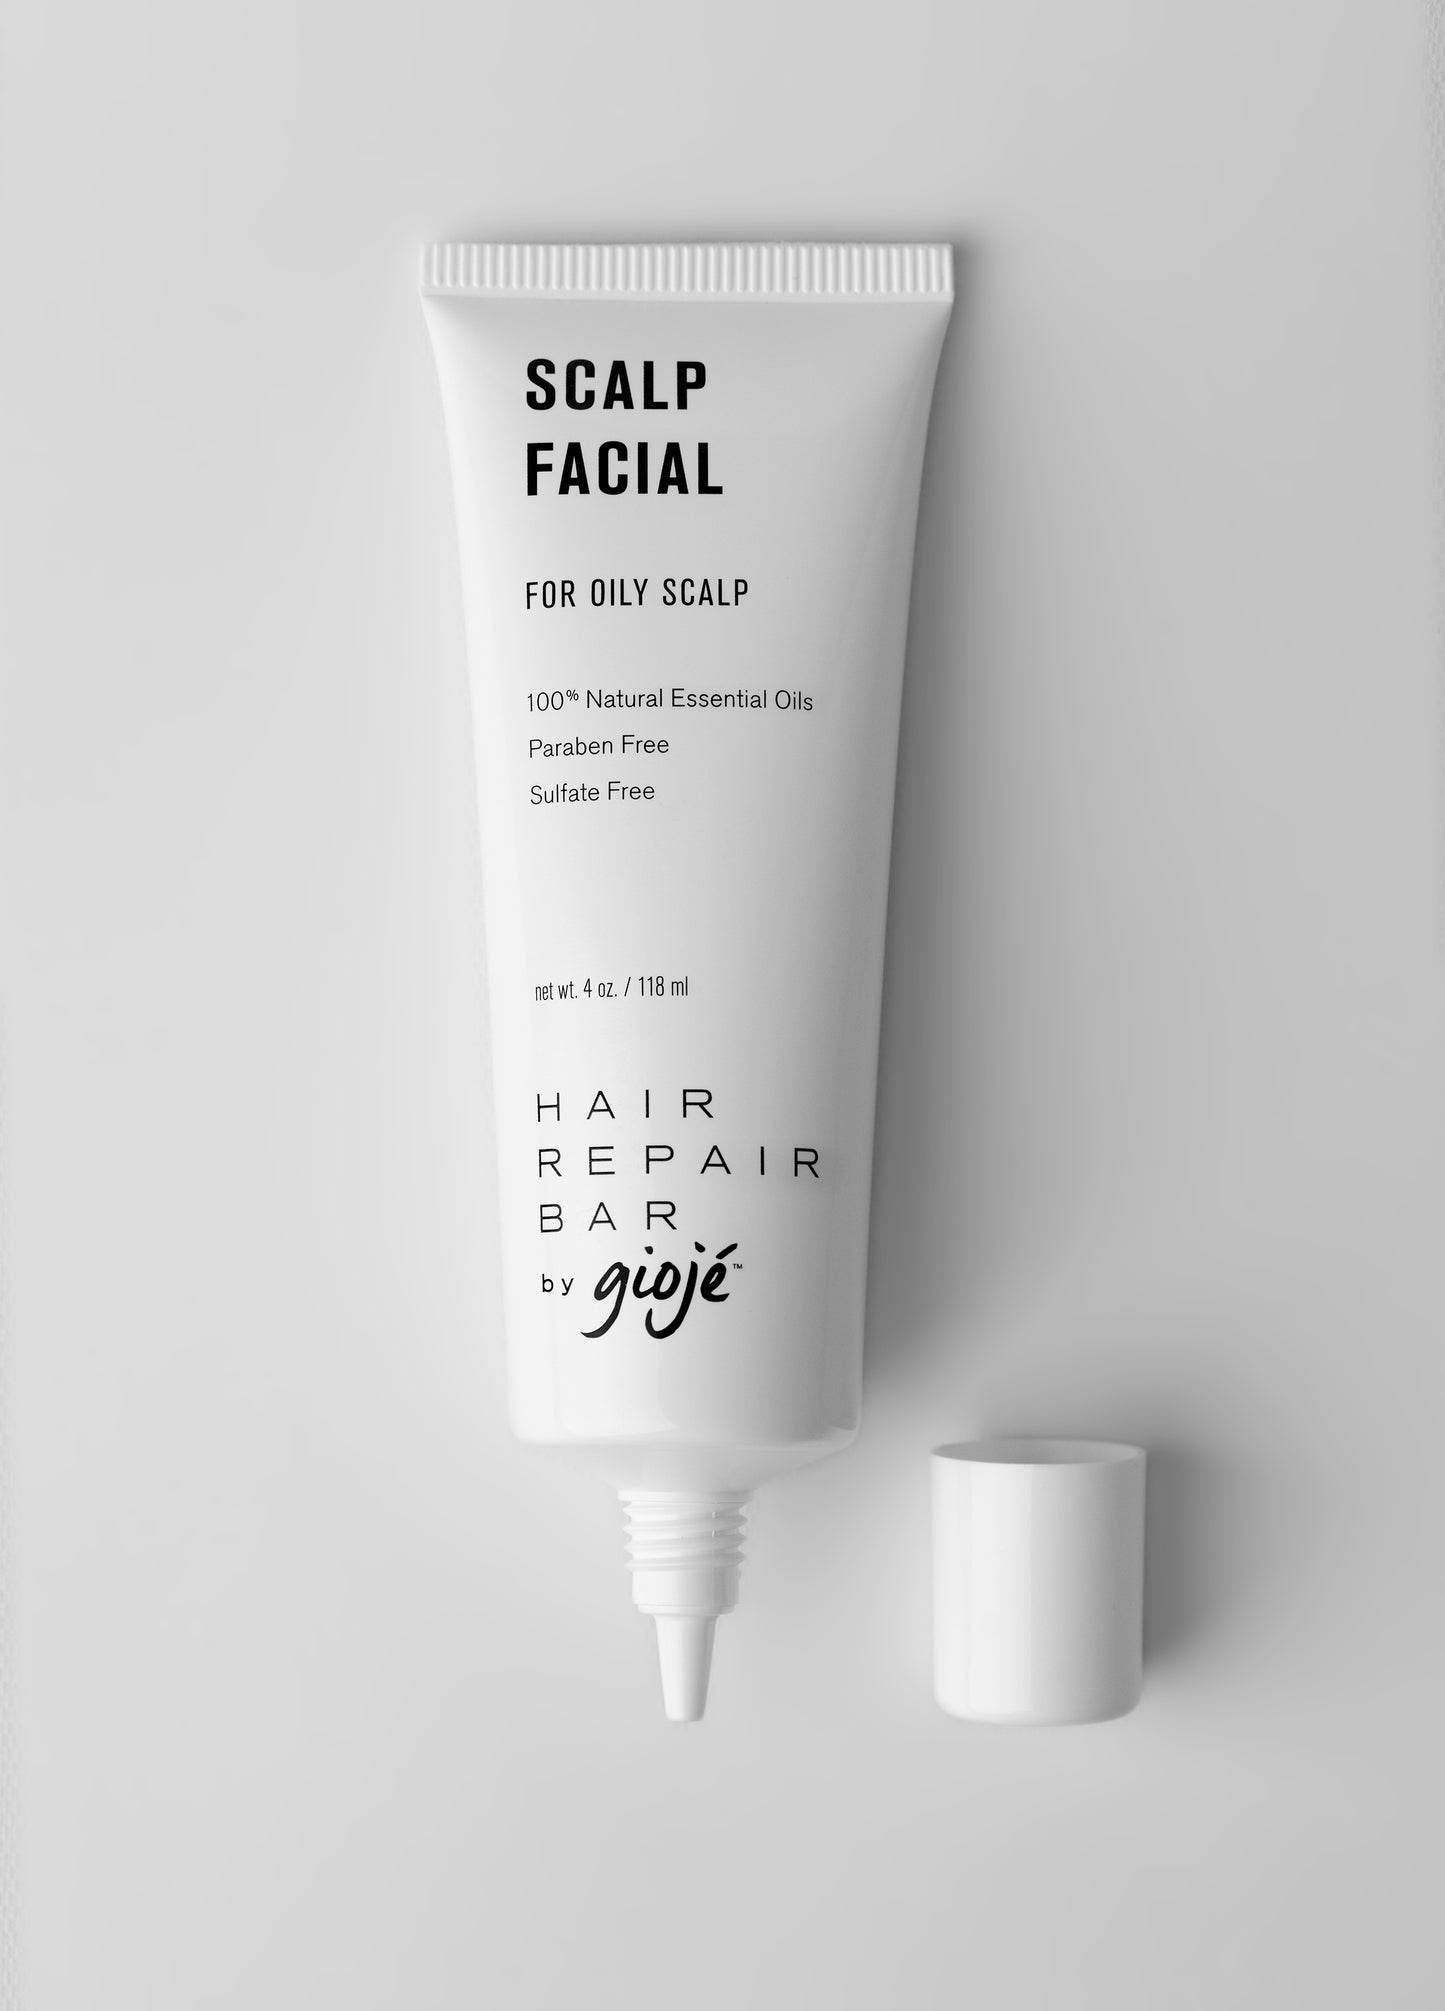 ScalpFacial™ for Oily Scalp